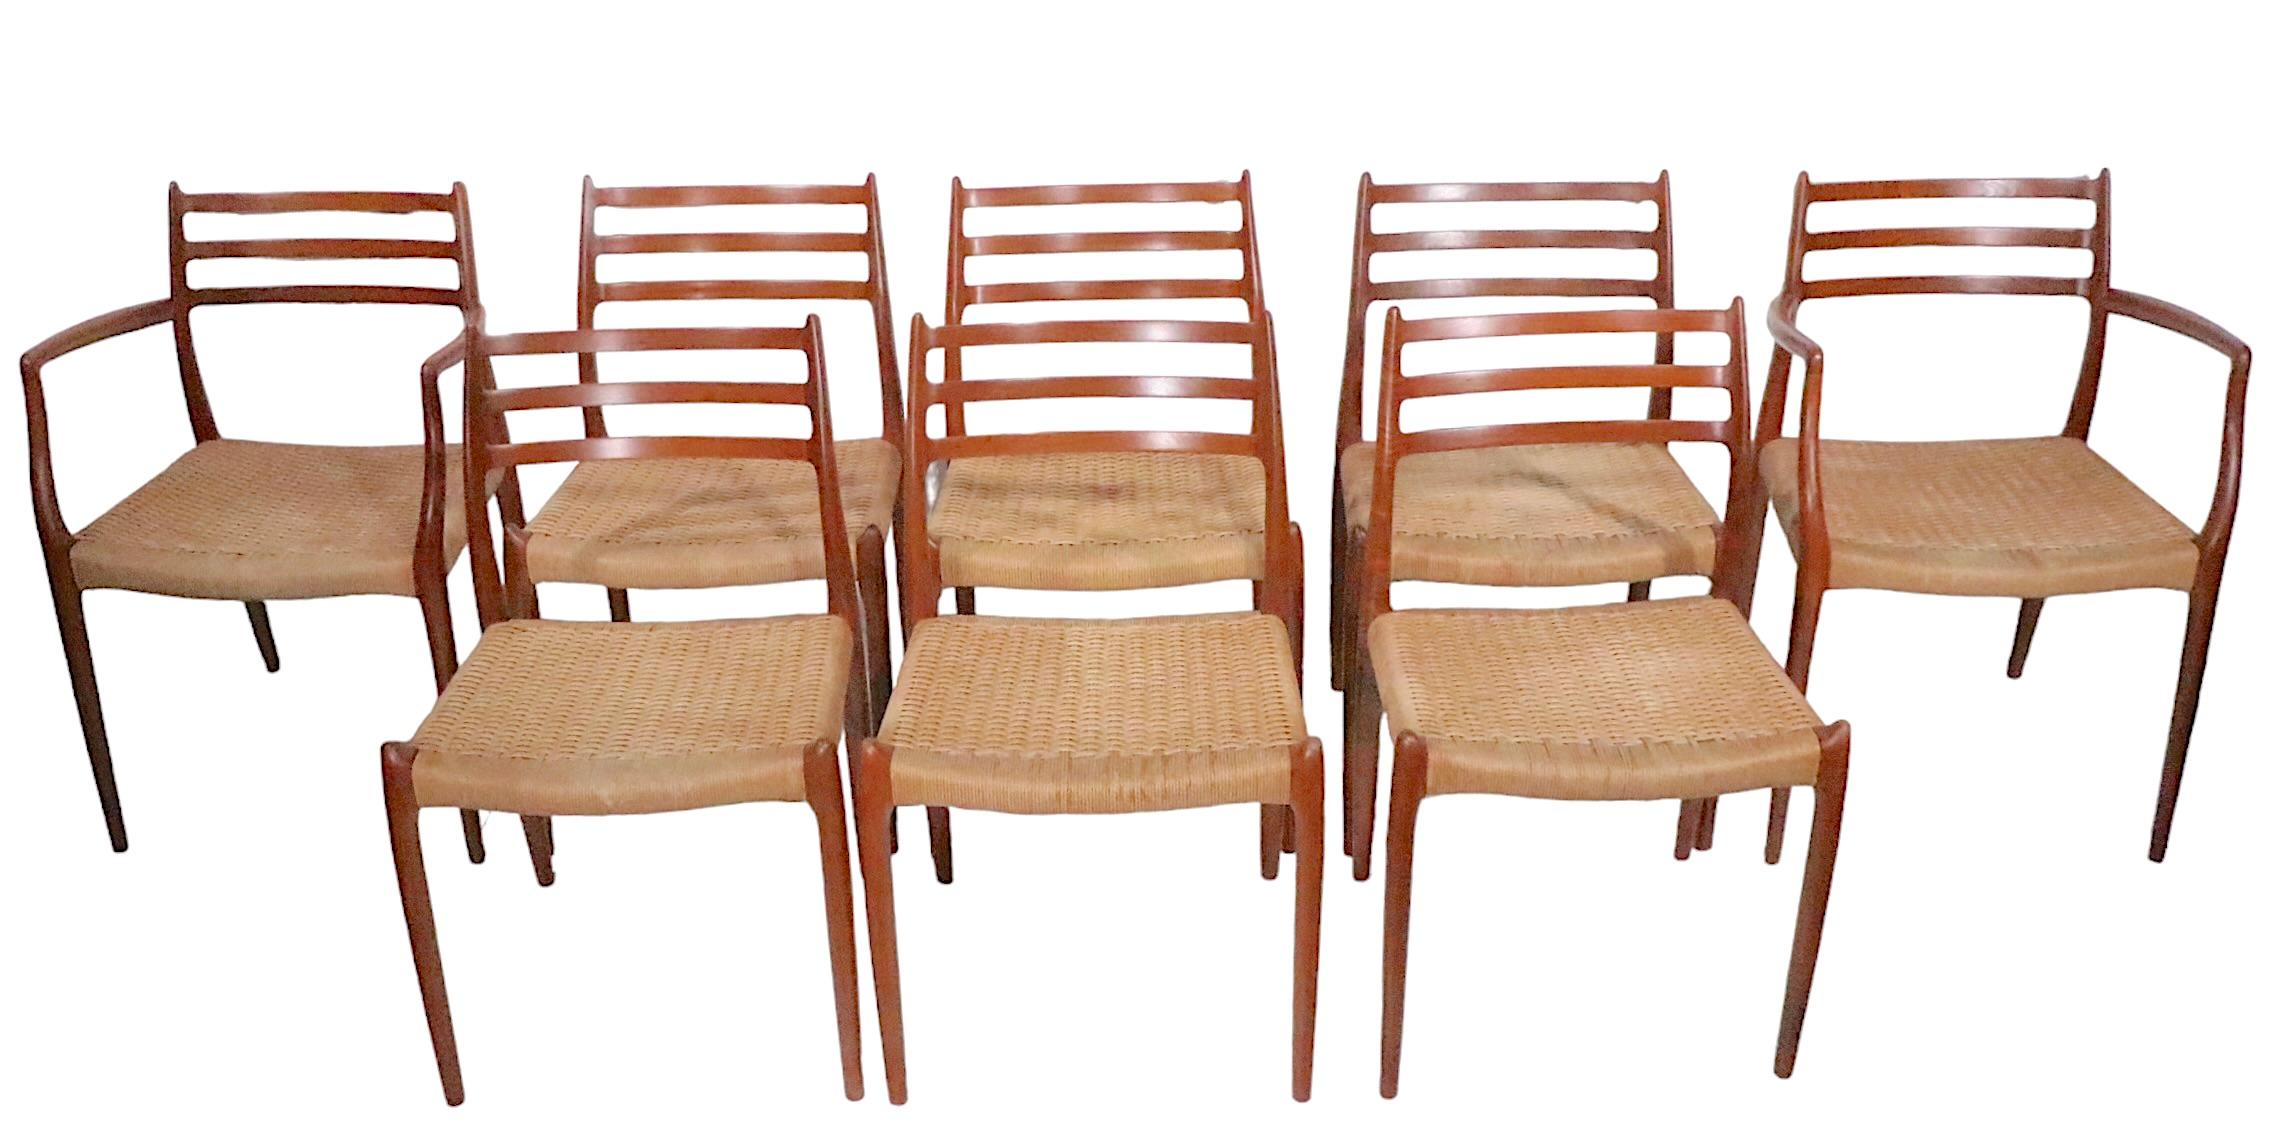 Exceptionnel ensemble de huit chaises de salle à manger conçues par Niels Otto Moller, fabriquées au Danemark par I.L.Moller Mobelfabrik vers les années 1960. L'ensemble se compose de deux fauteuils ( modèle 62 ) et de six chaises d'appoint ( modèle